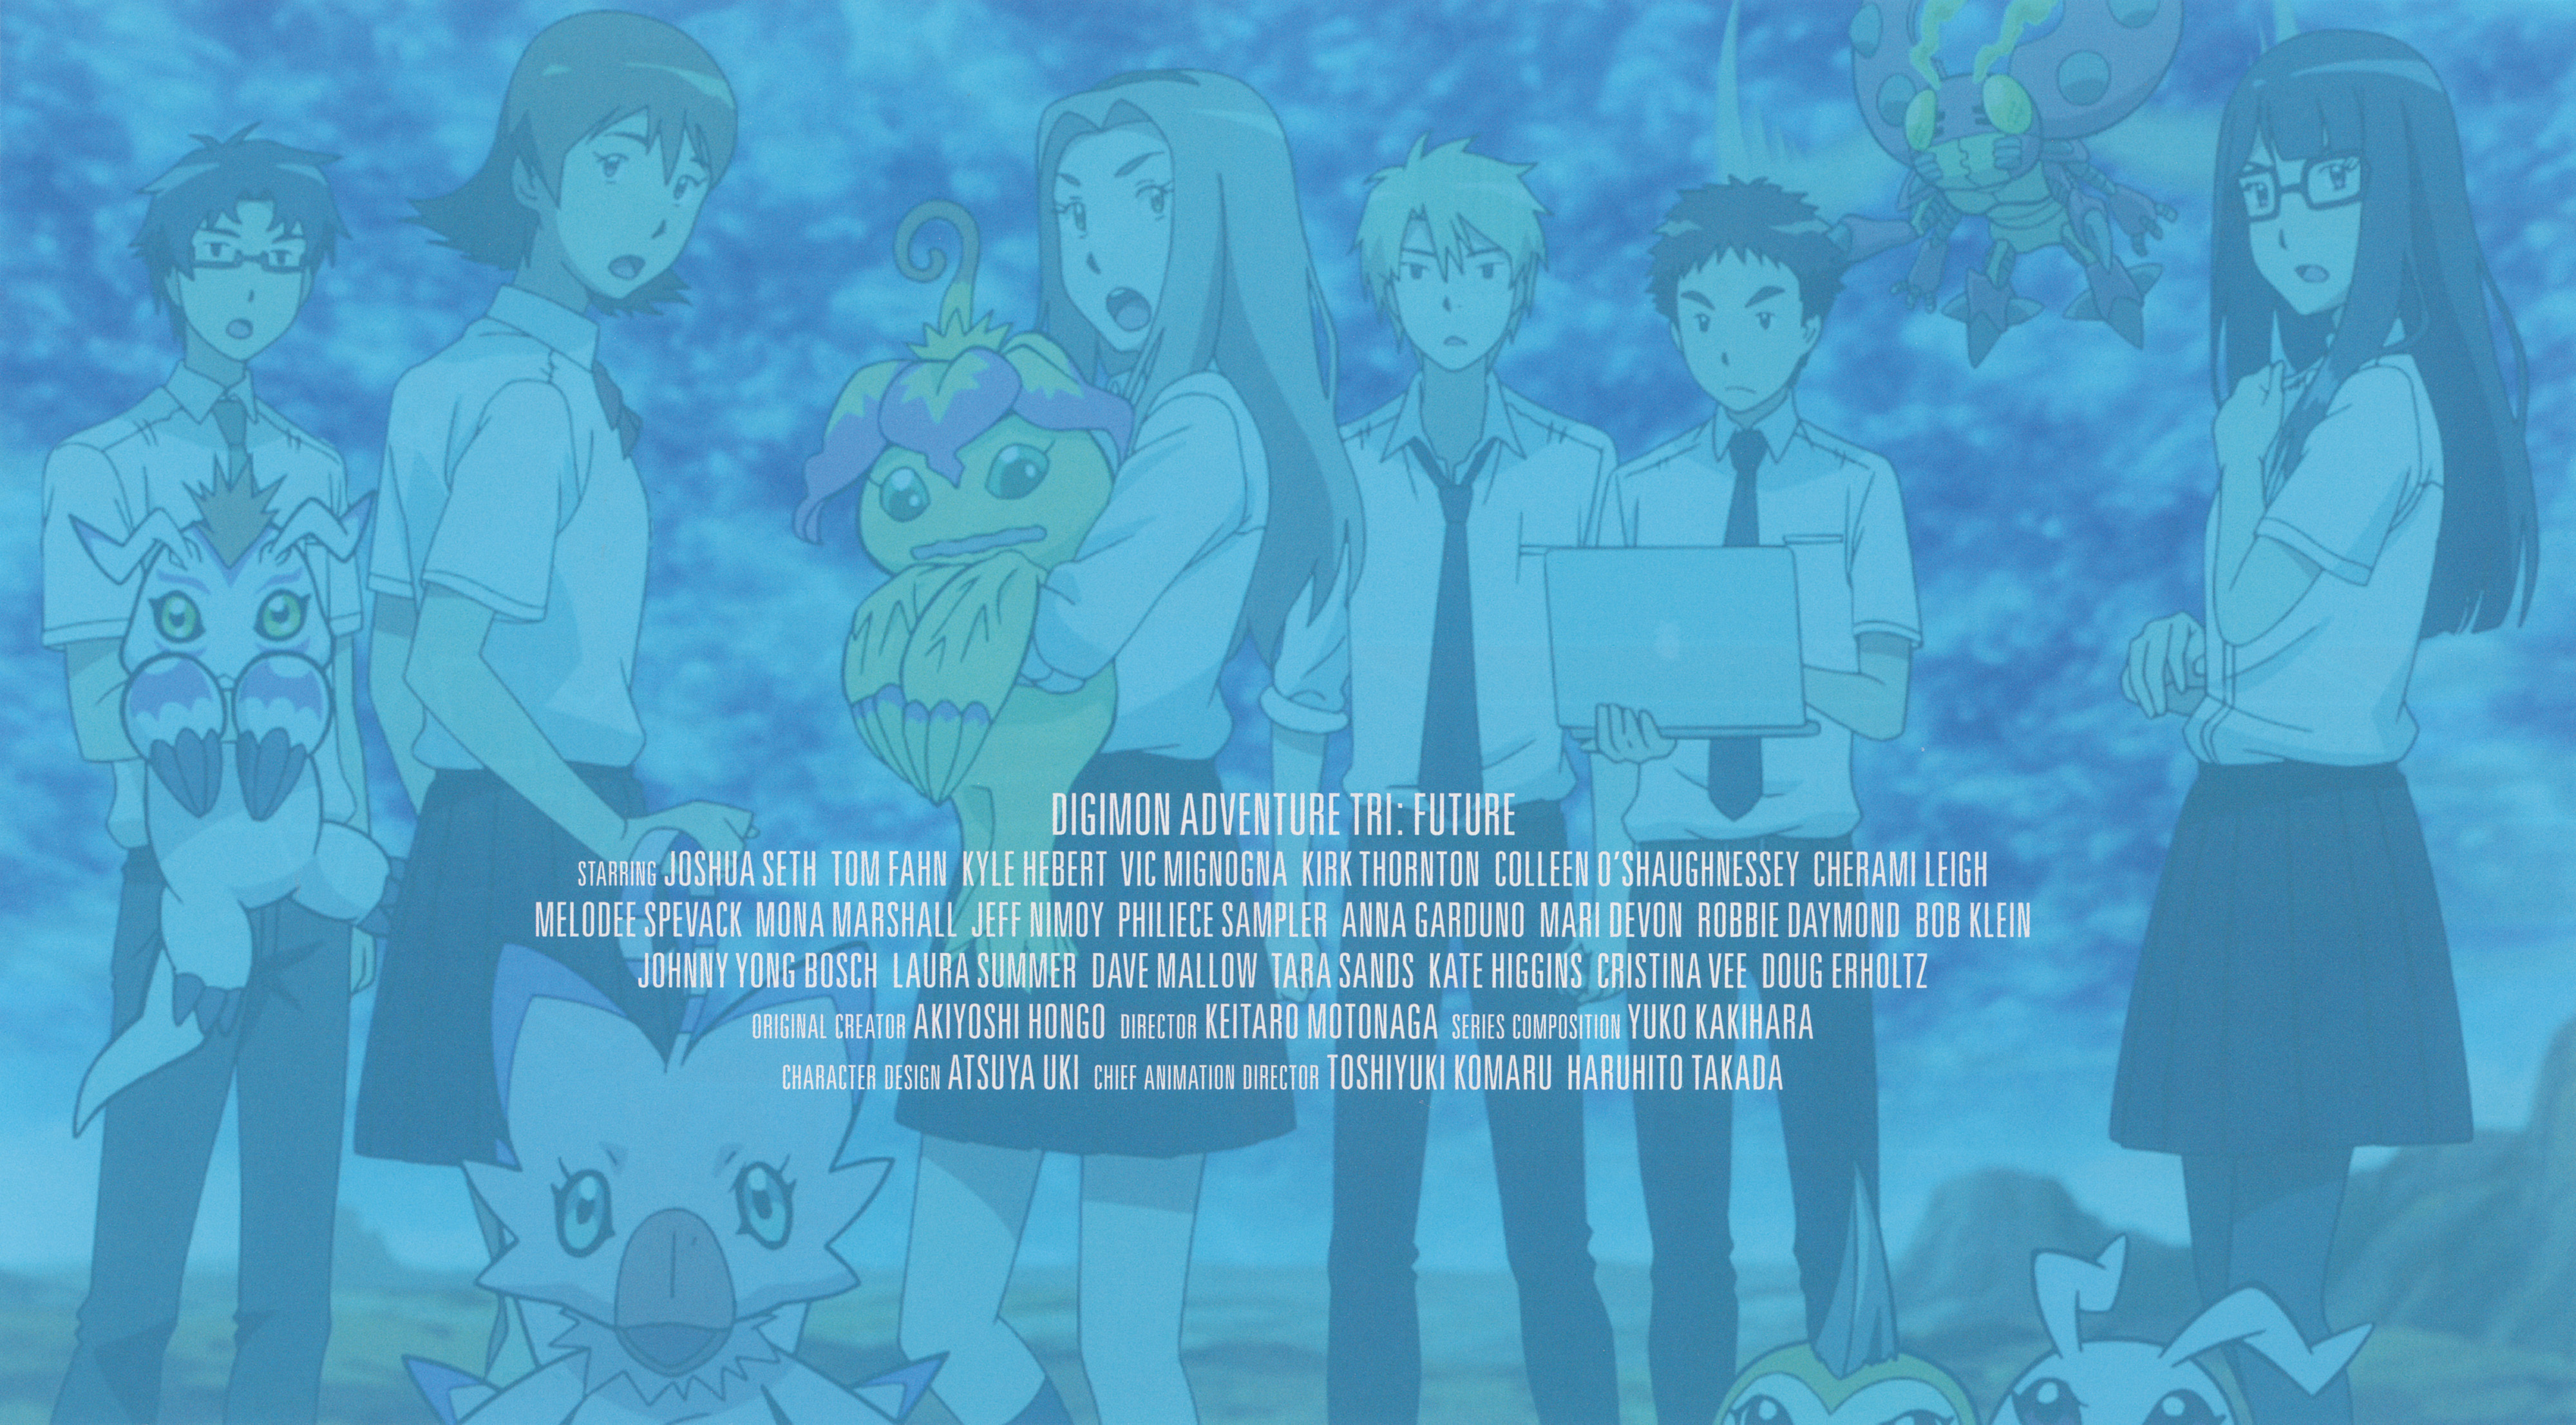 Digimon Adventure tri.: Our Future Review